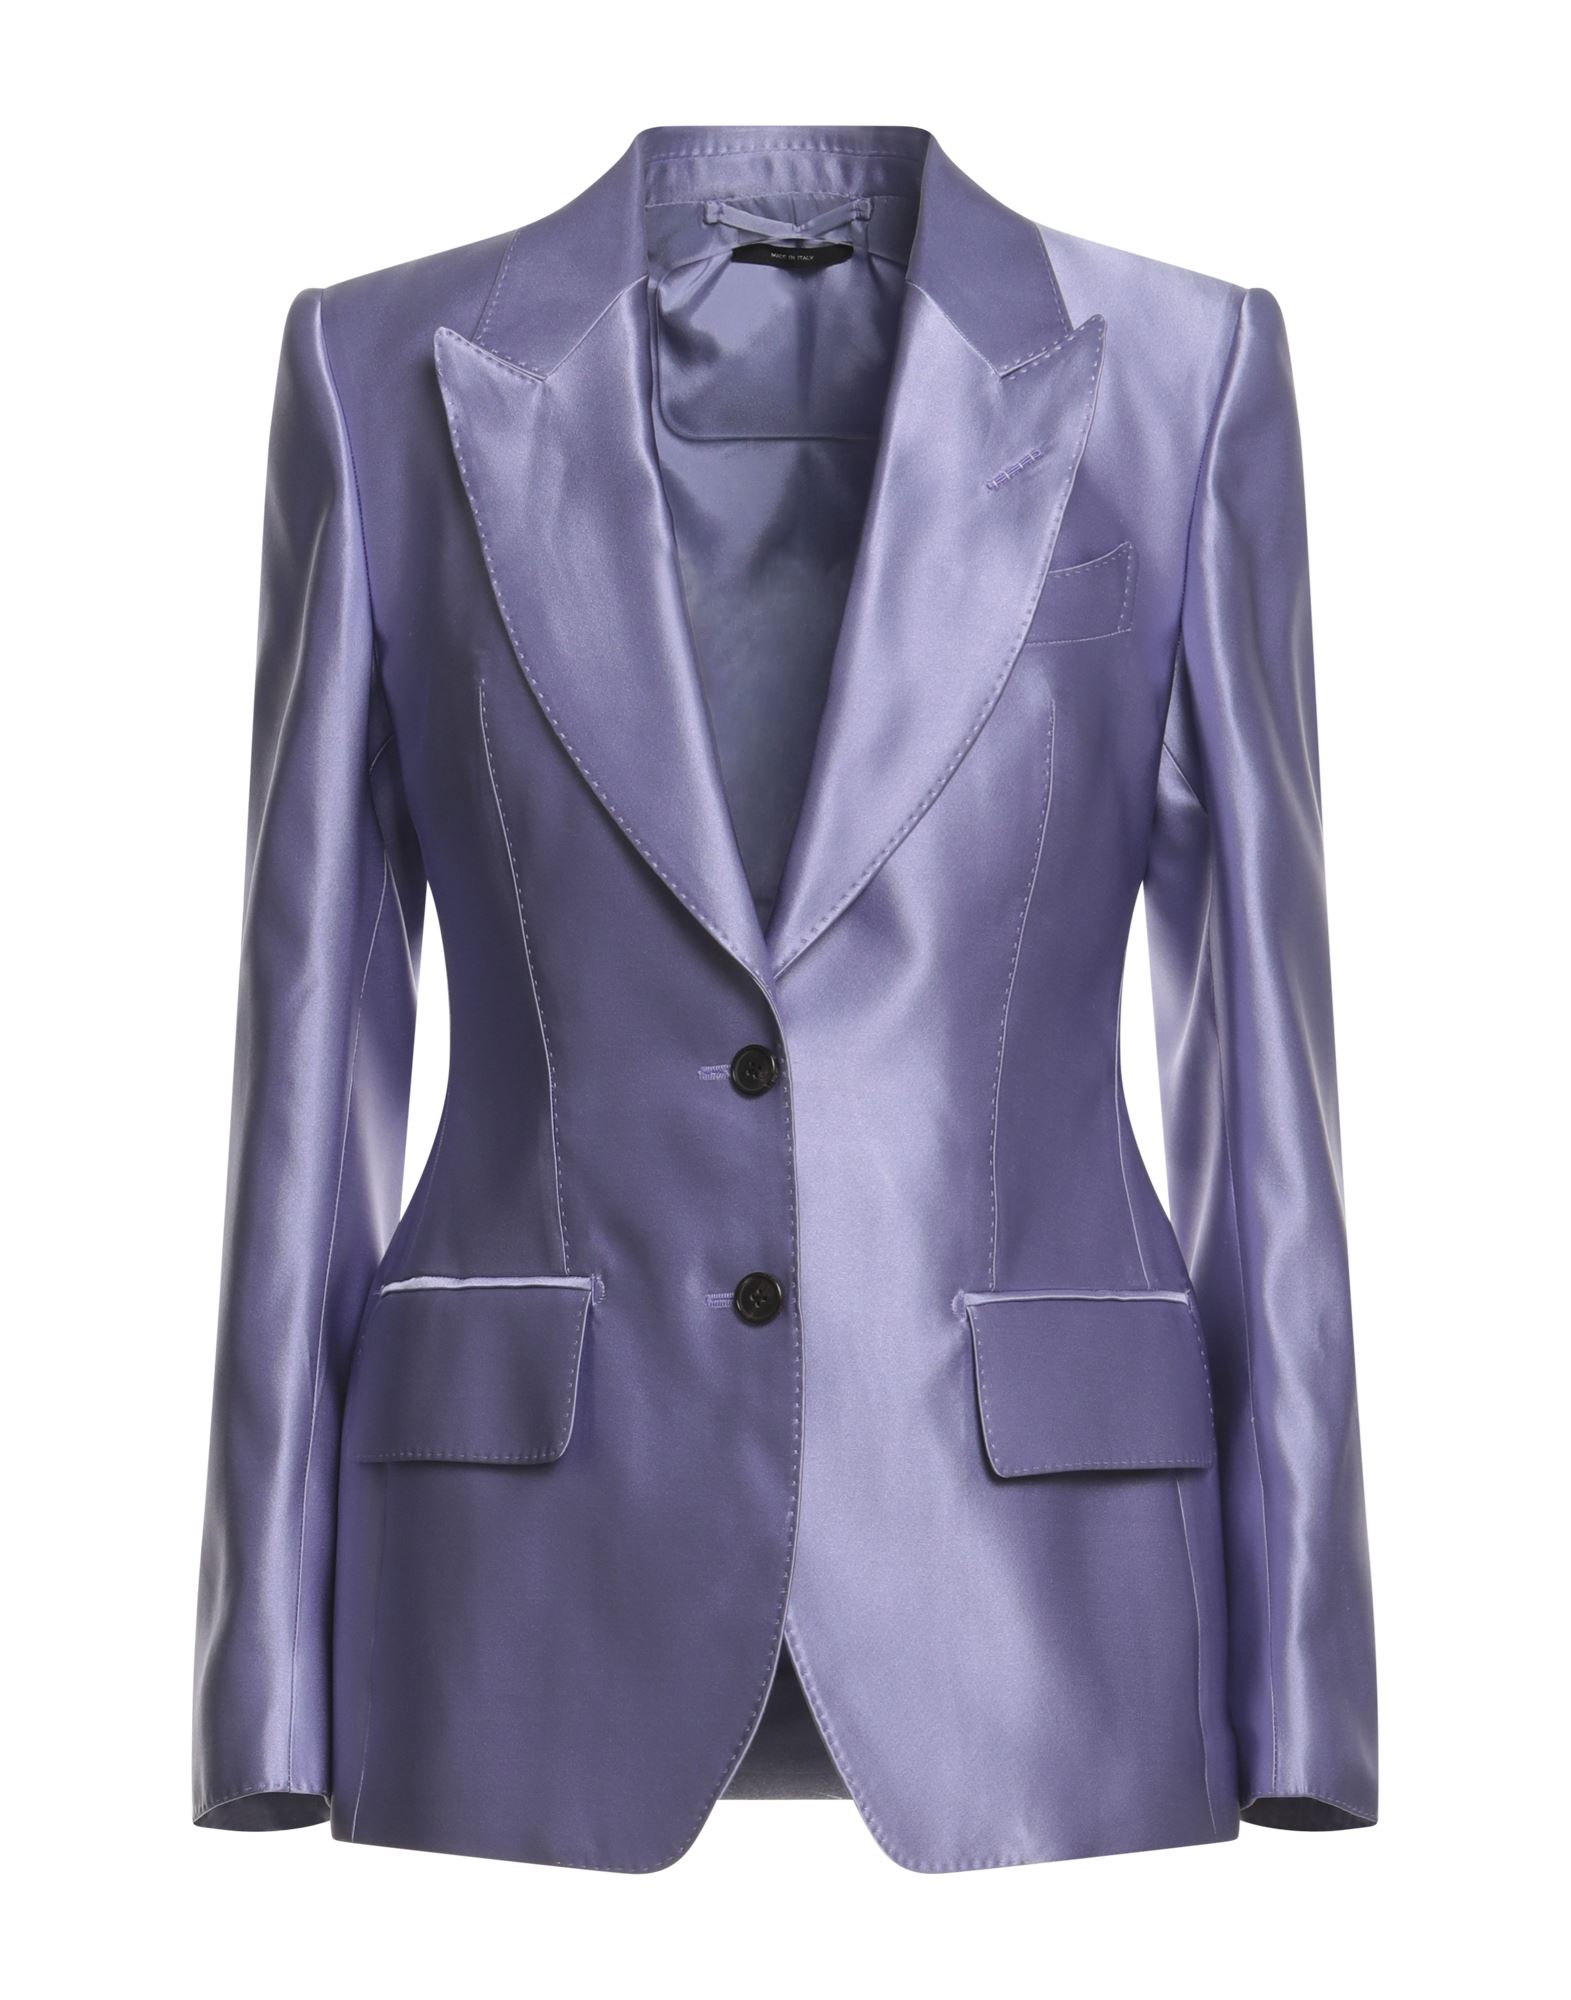 Tom Ford Suit Jackets In Light Violet